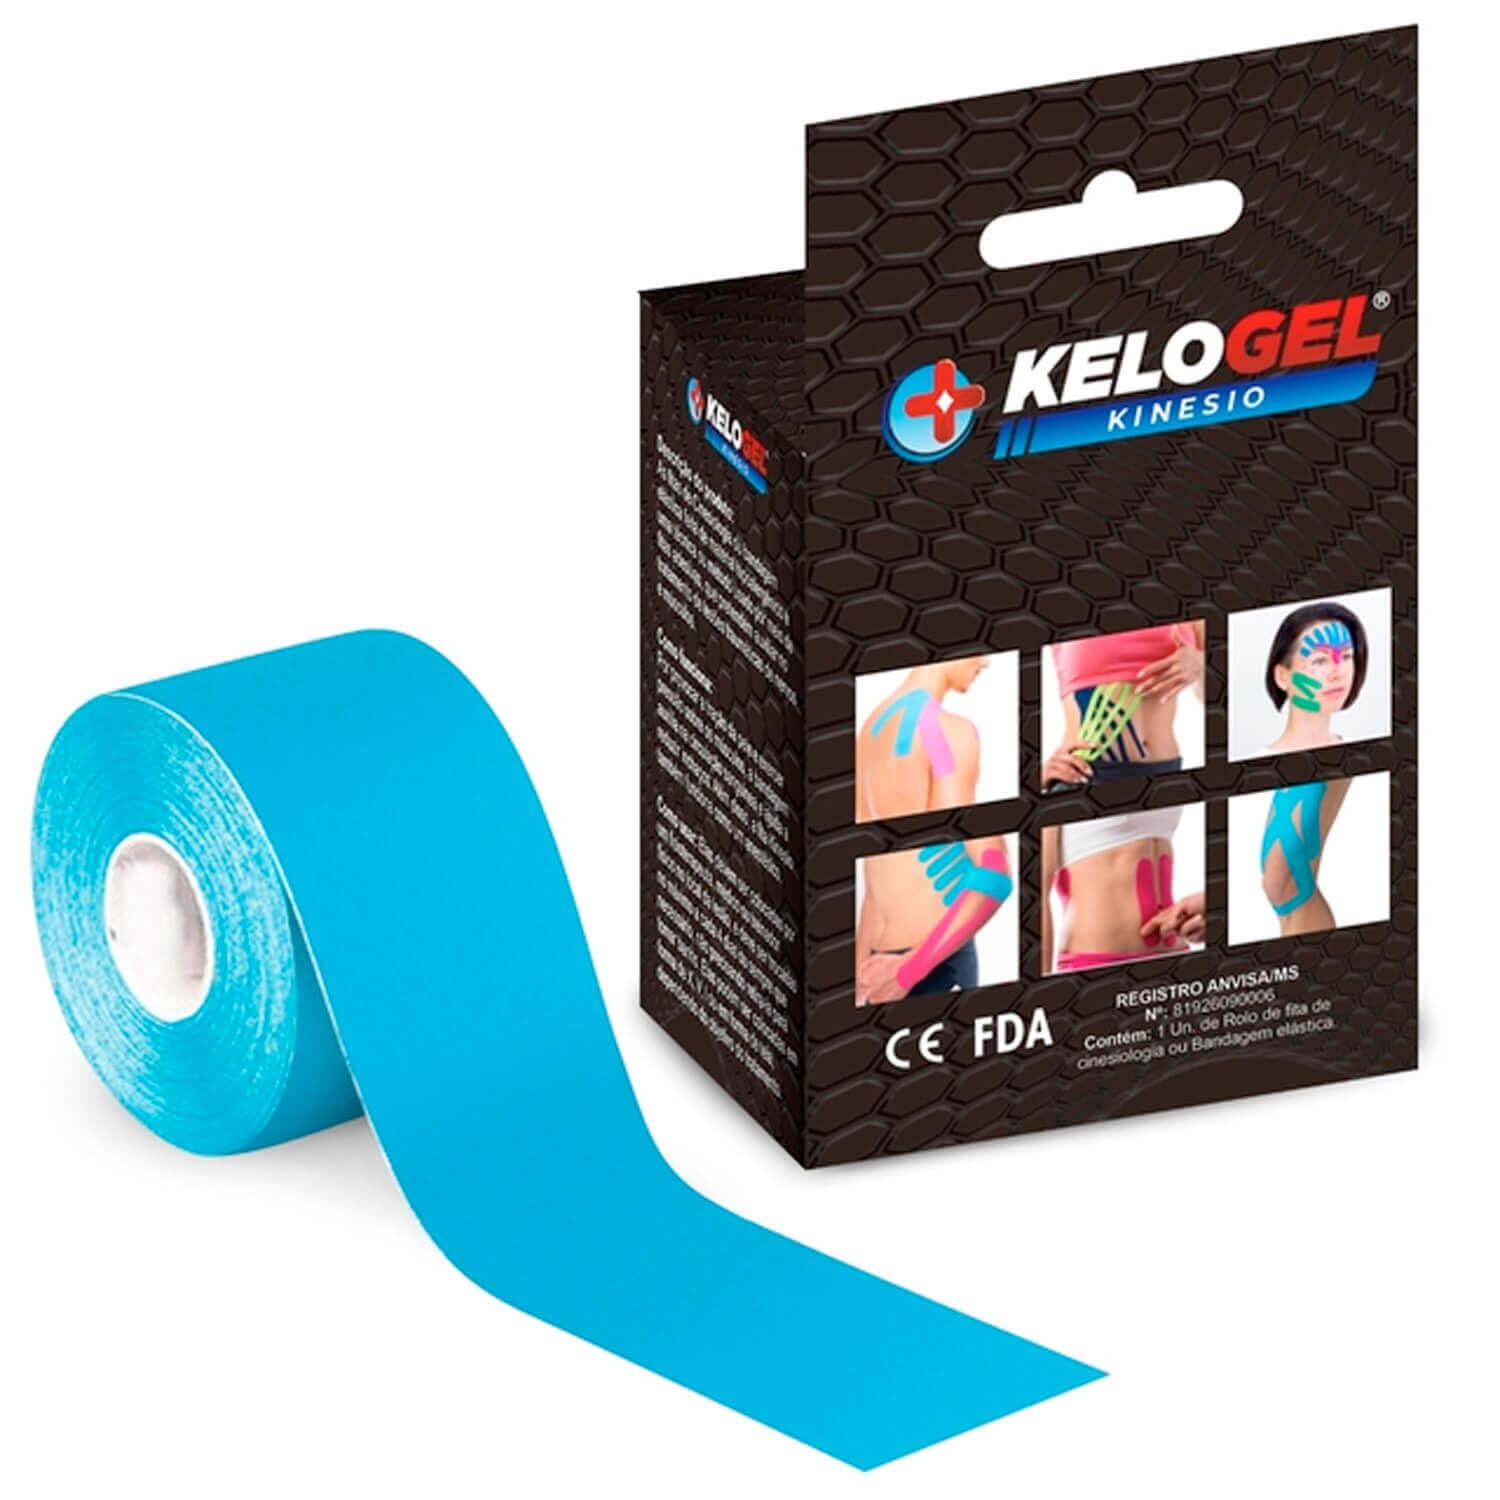 Fita Kinesio Tape Kelogel Bandagem Elástica Premium 5cmx5m 1un